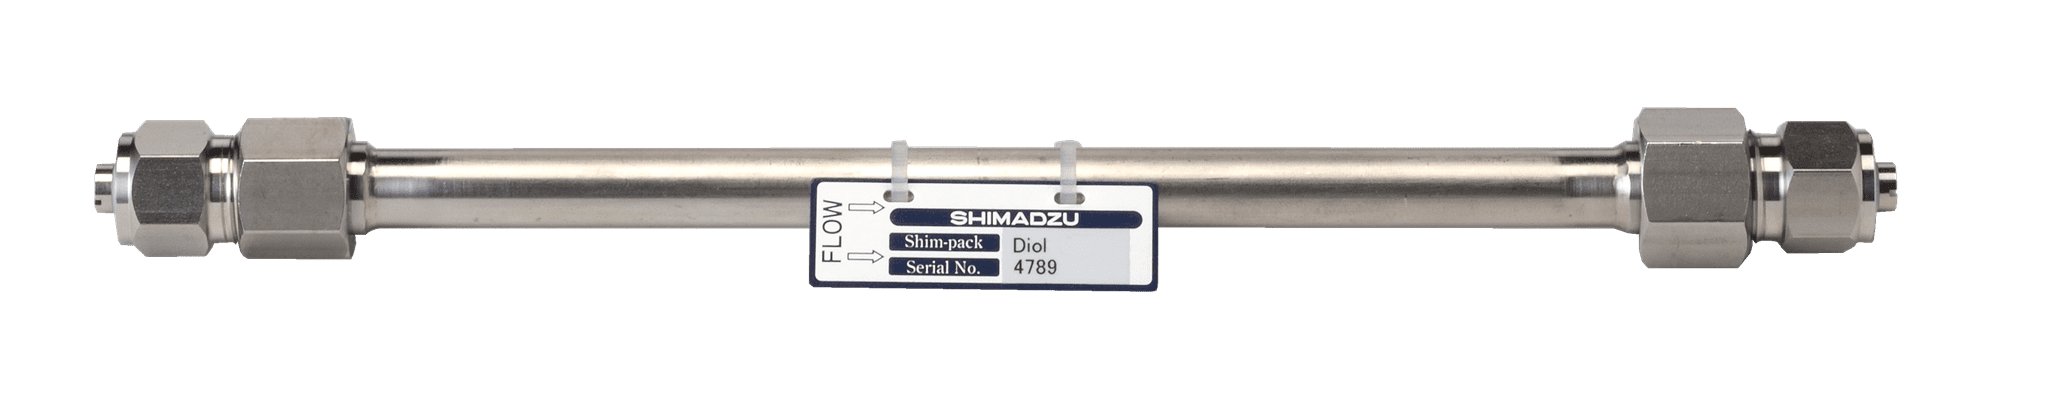 Immagine di Shim-pack Diol-150; 5 µm; 500 x 7.9